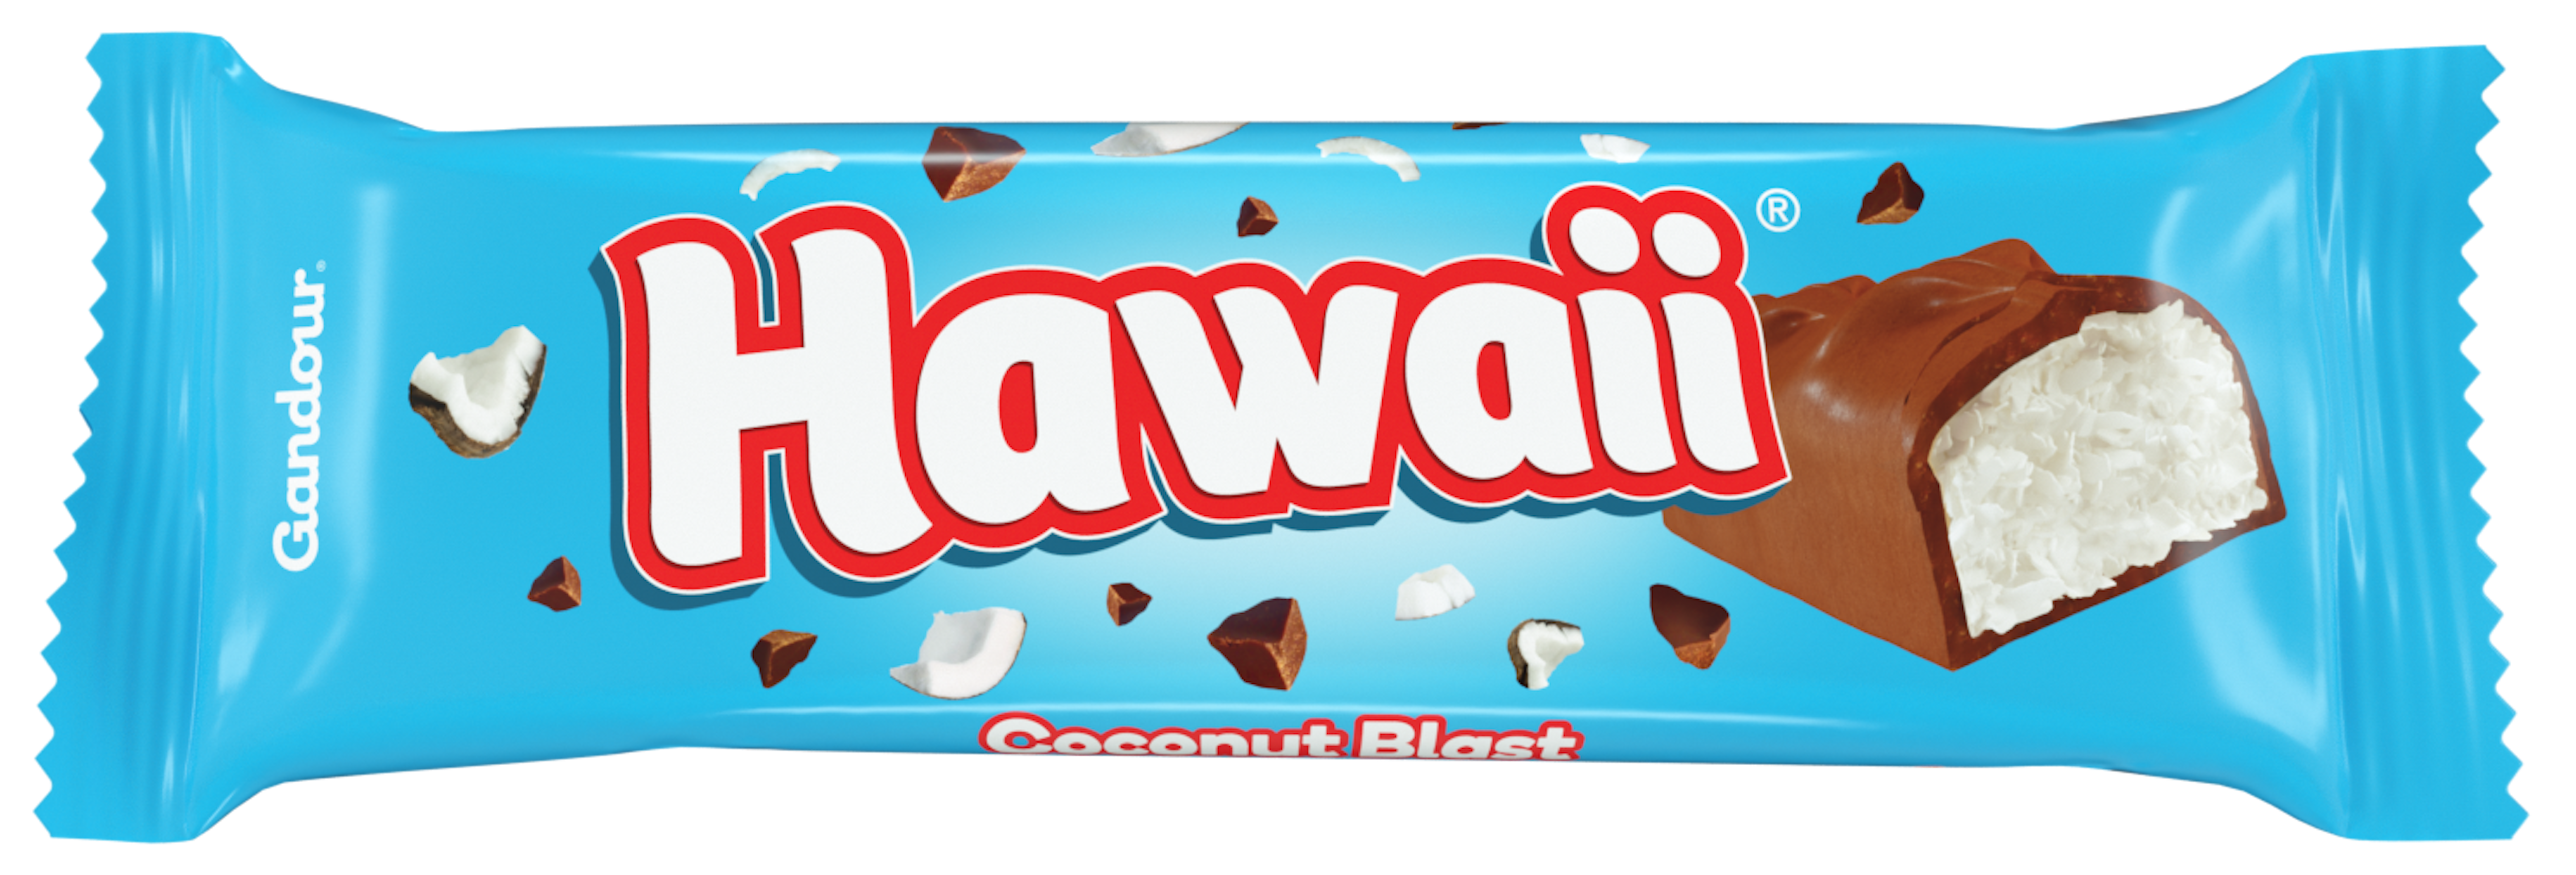 hawaii coconut chocolate bar